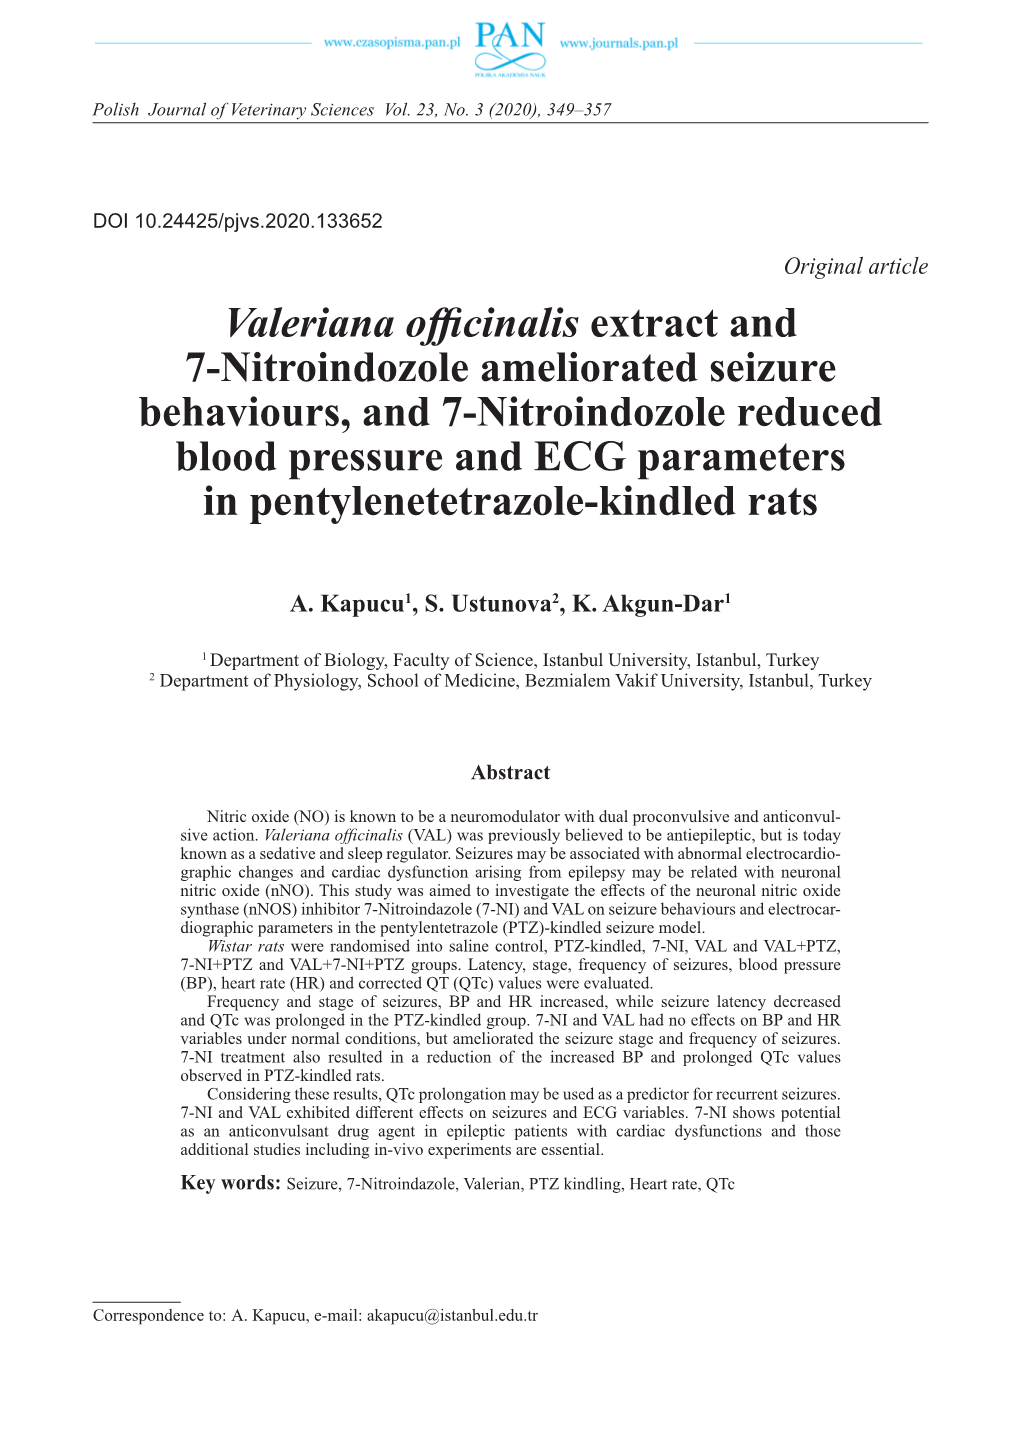 Valeriana Officinalis Extract and 7-Nitroindozole Ameliorated Seizure